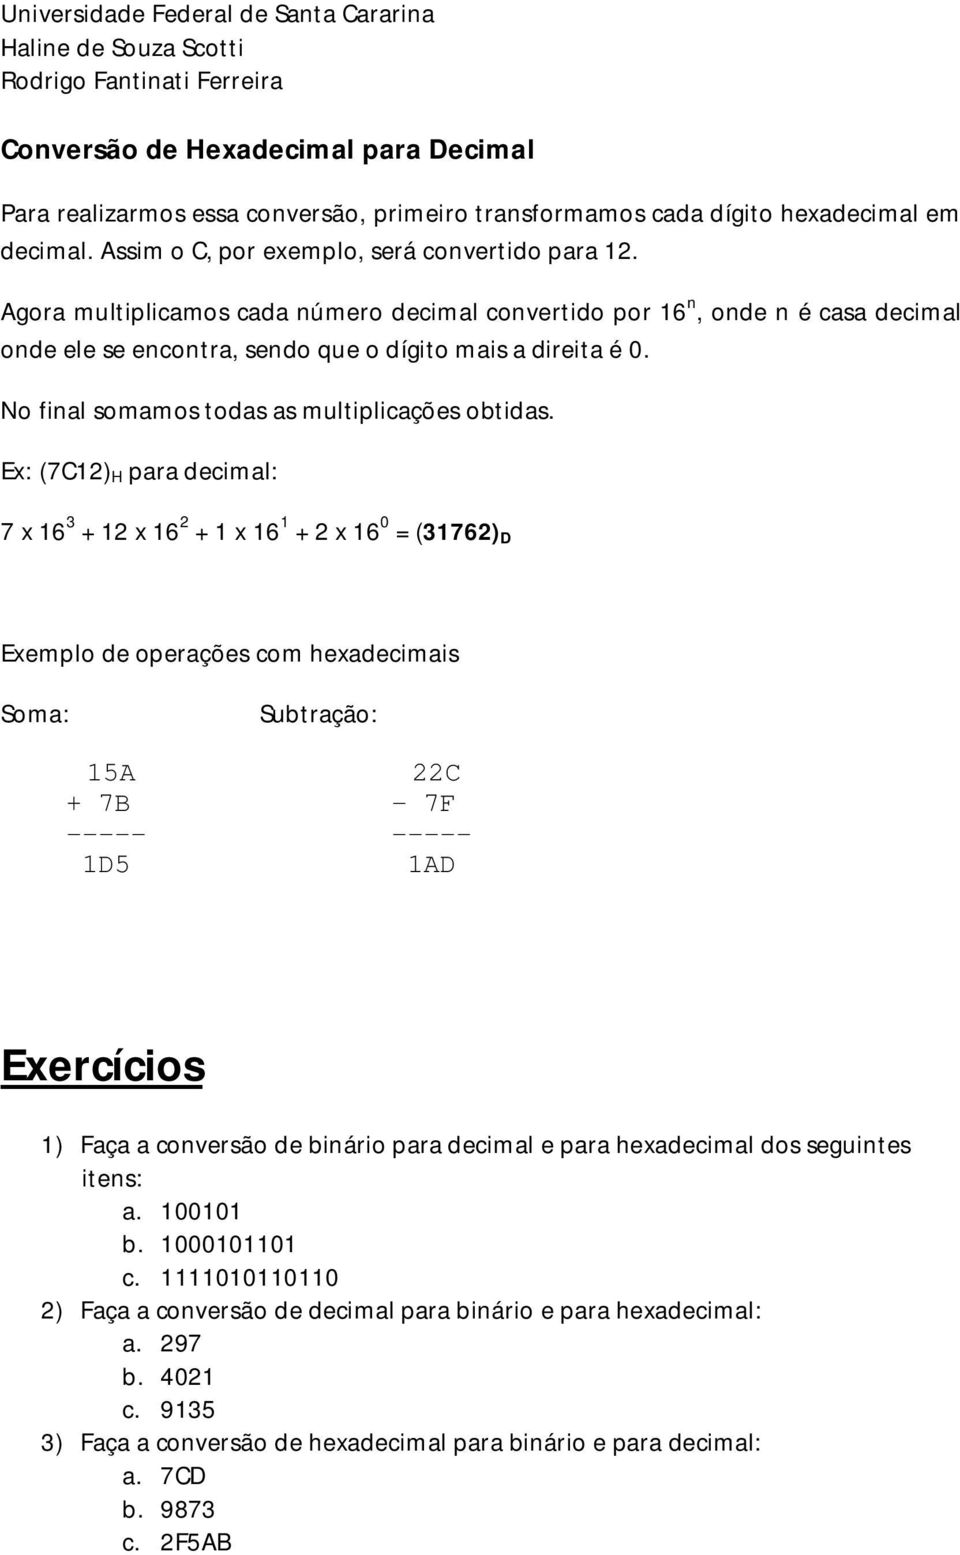 Ex: (7C12) H para decimal: 7 x 16 3 + 12 x 16 2 + 1 x 16 1 + 2 x 16 0 = (31762) D Exemplo de operações com hexadecimais Soma: Subtração: 15A 22C + 7B - 7F ----- ----- 1D5 1AD Exercícios 1) Faça a